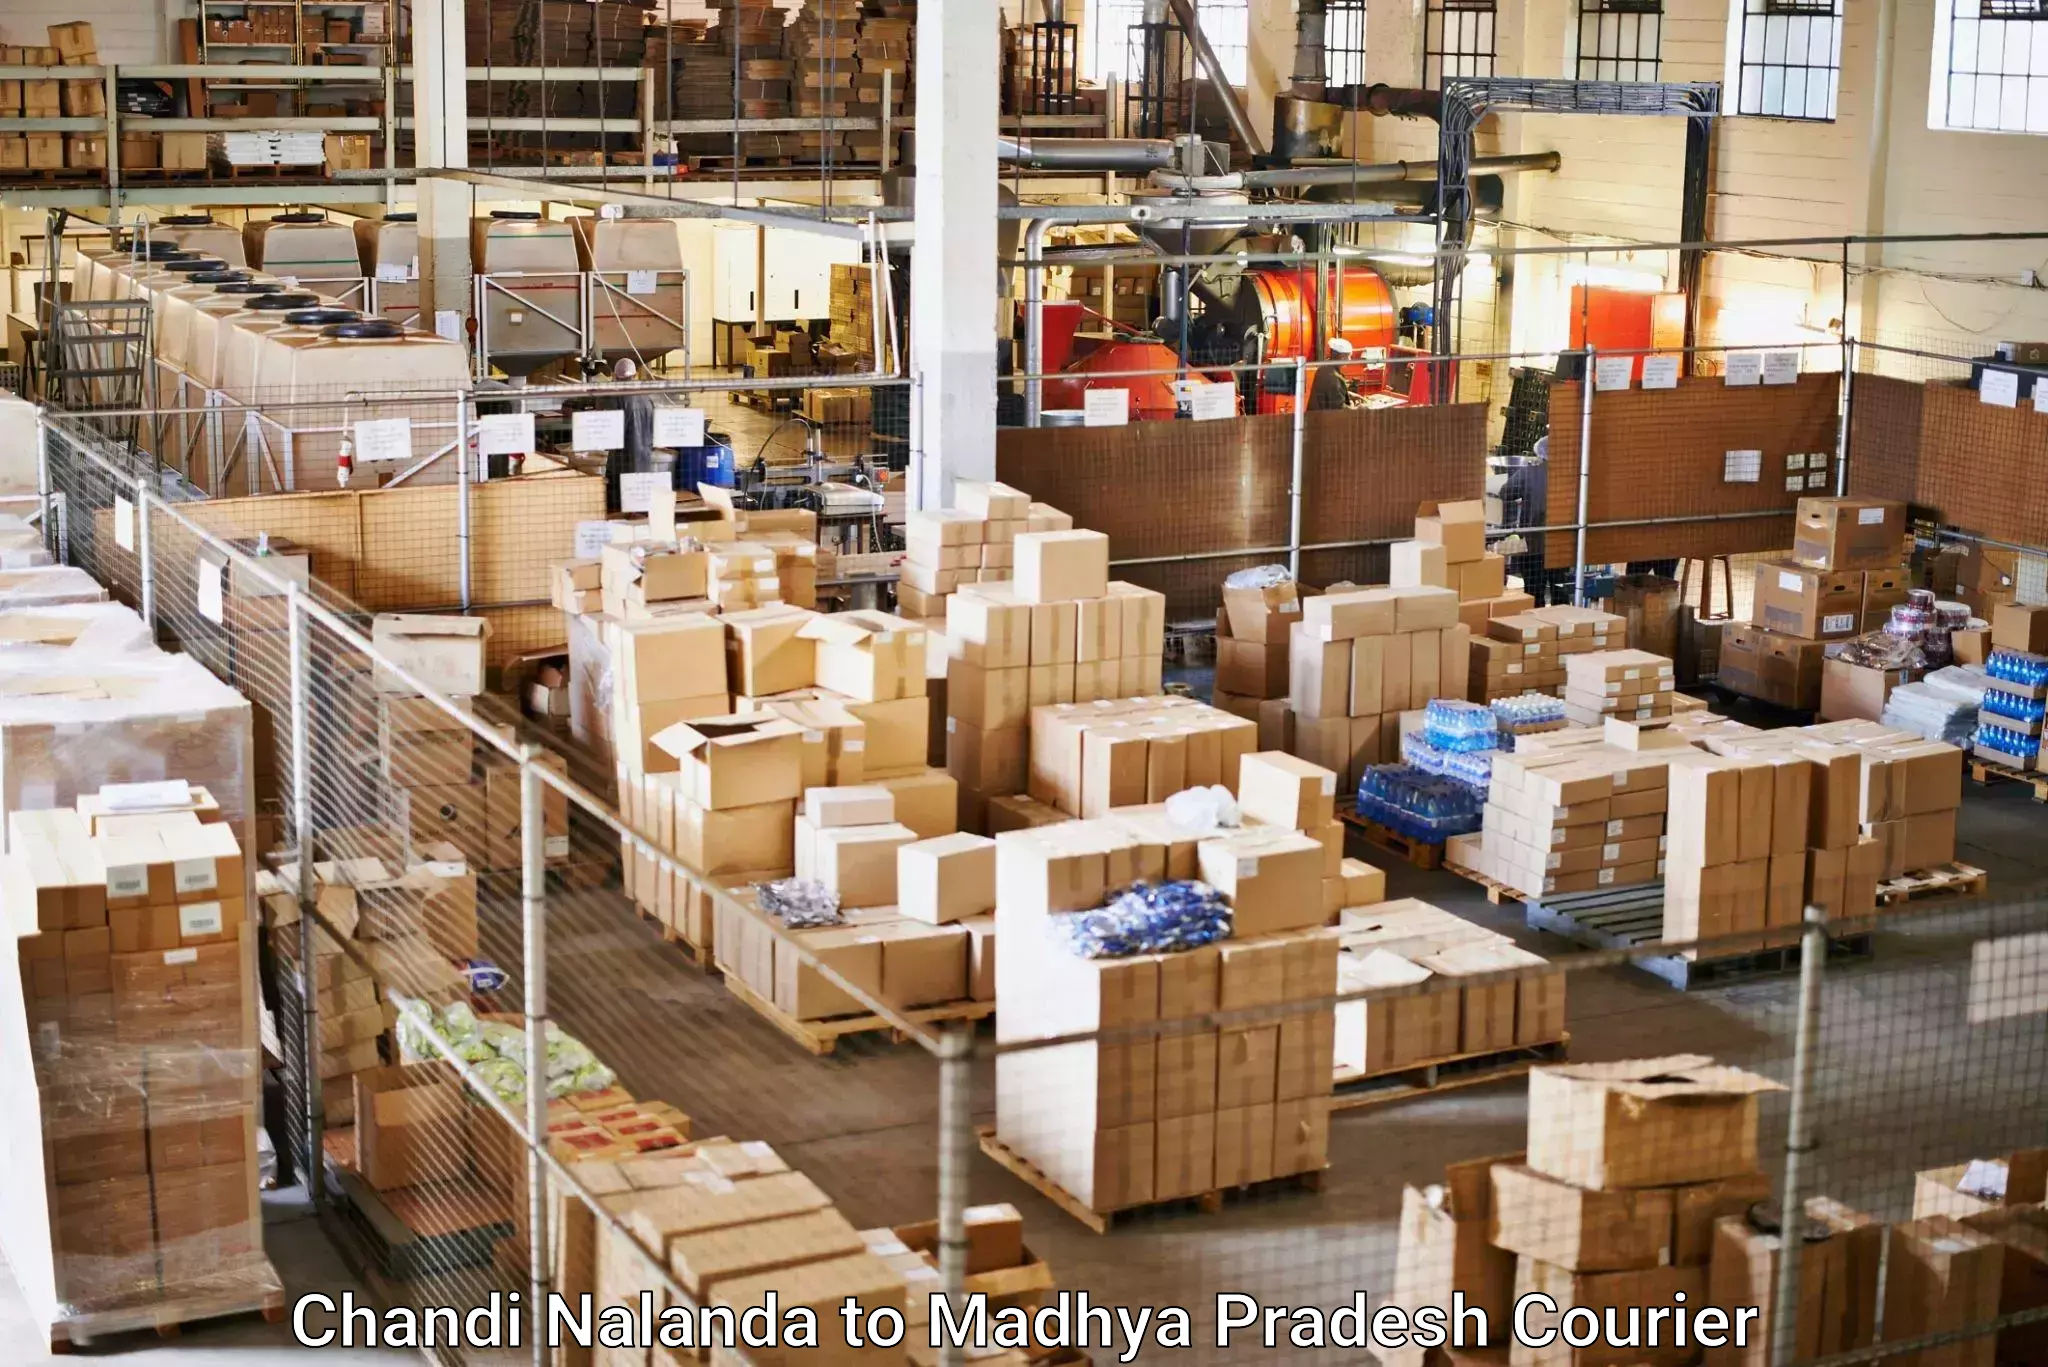 International parcel service Chandi Nalanda to Madhya Pradesh